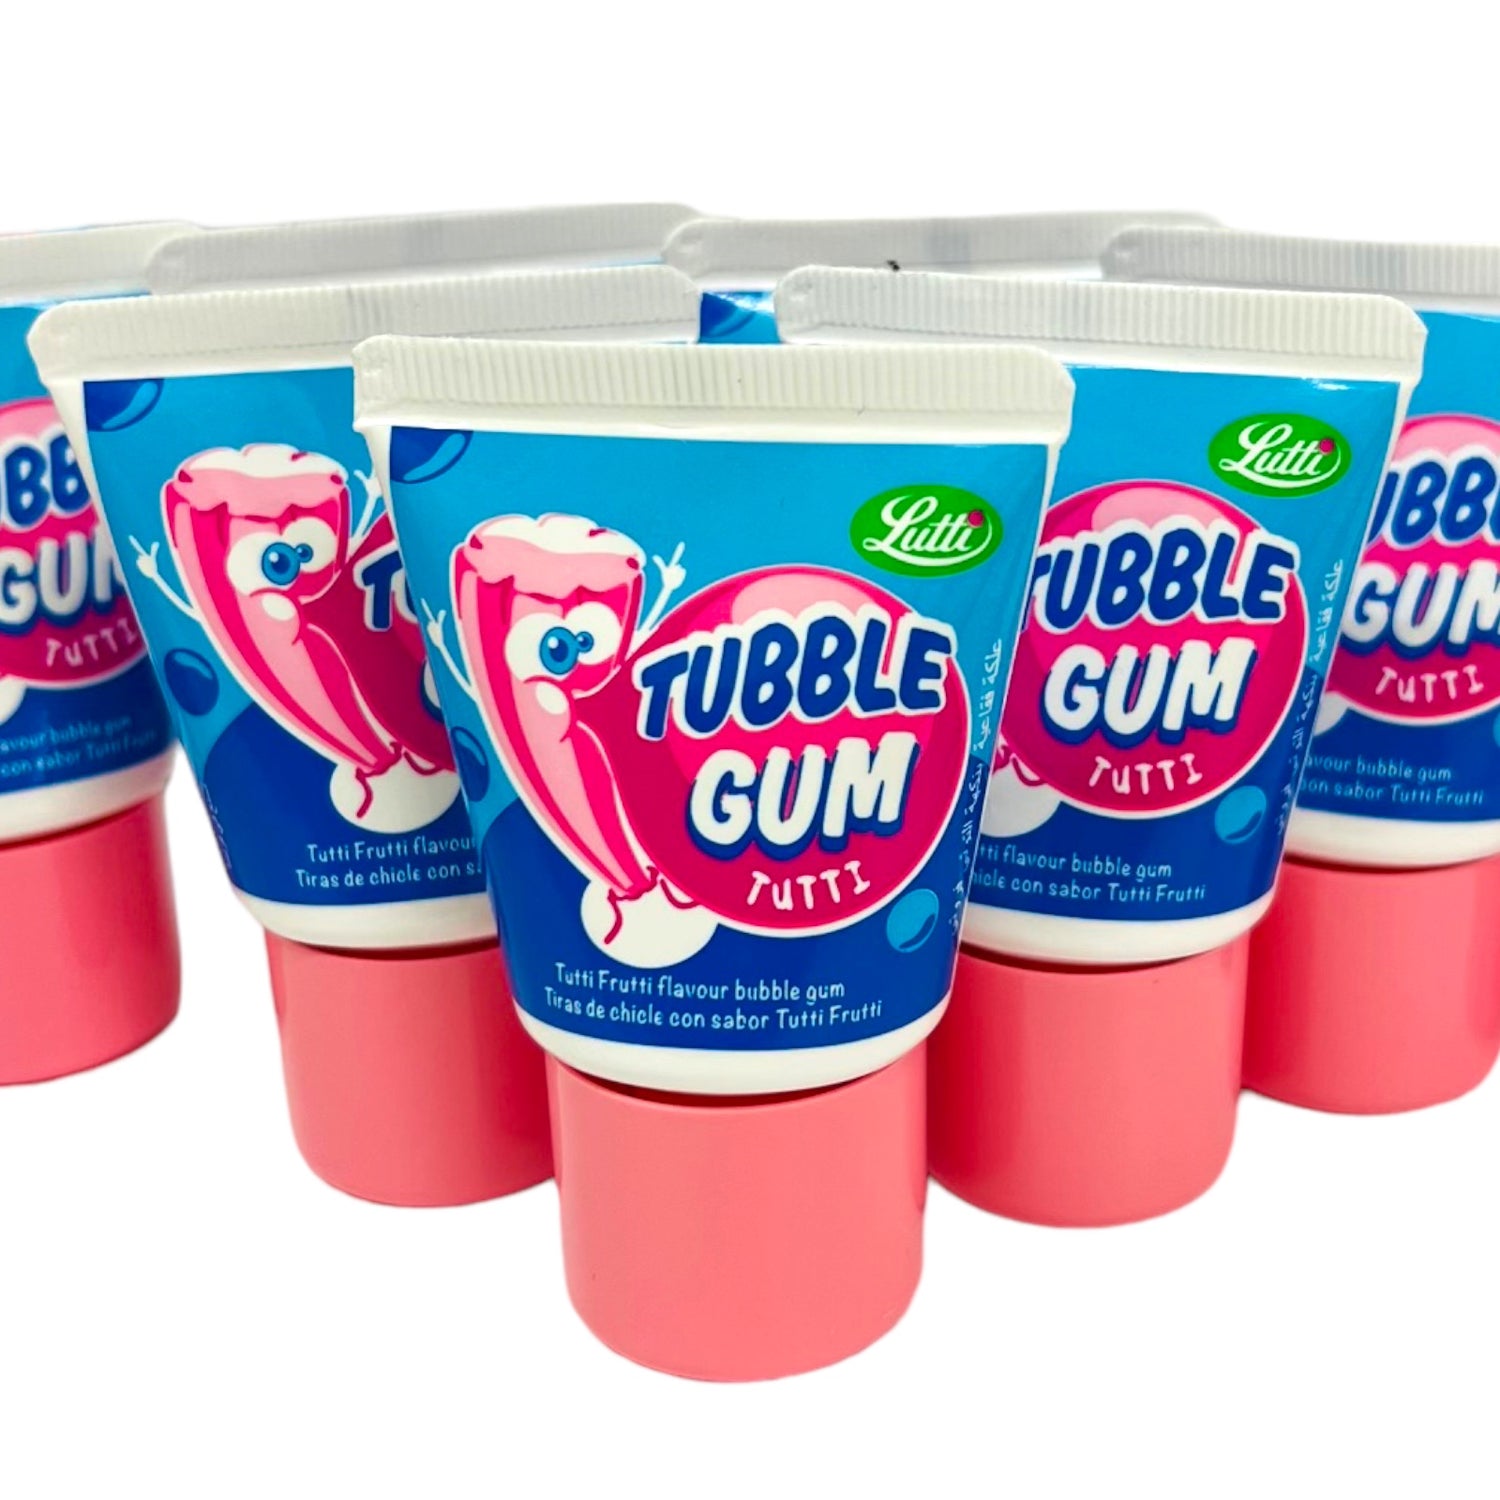 Tubble Gum Tutti Frutti Flavour